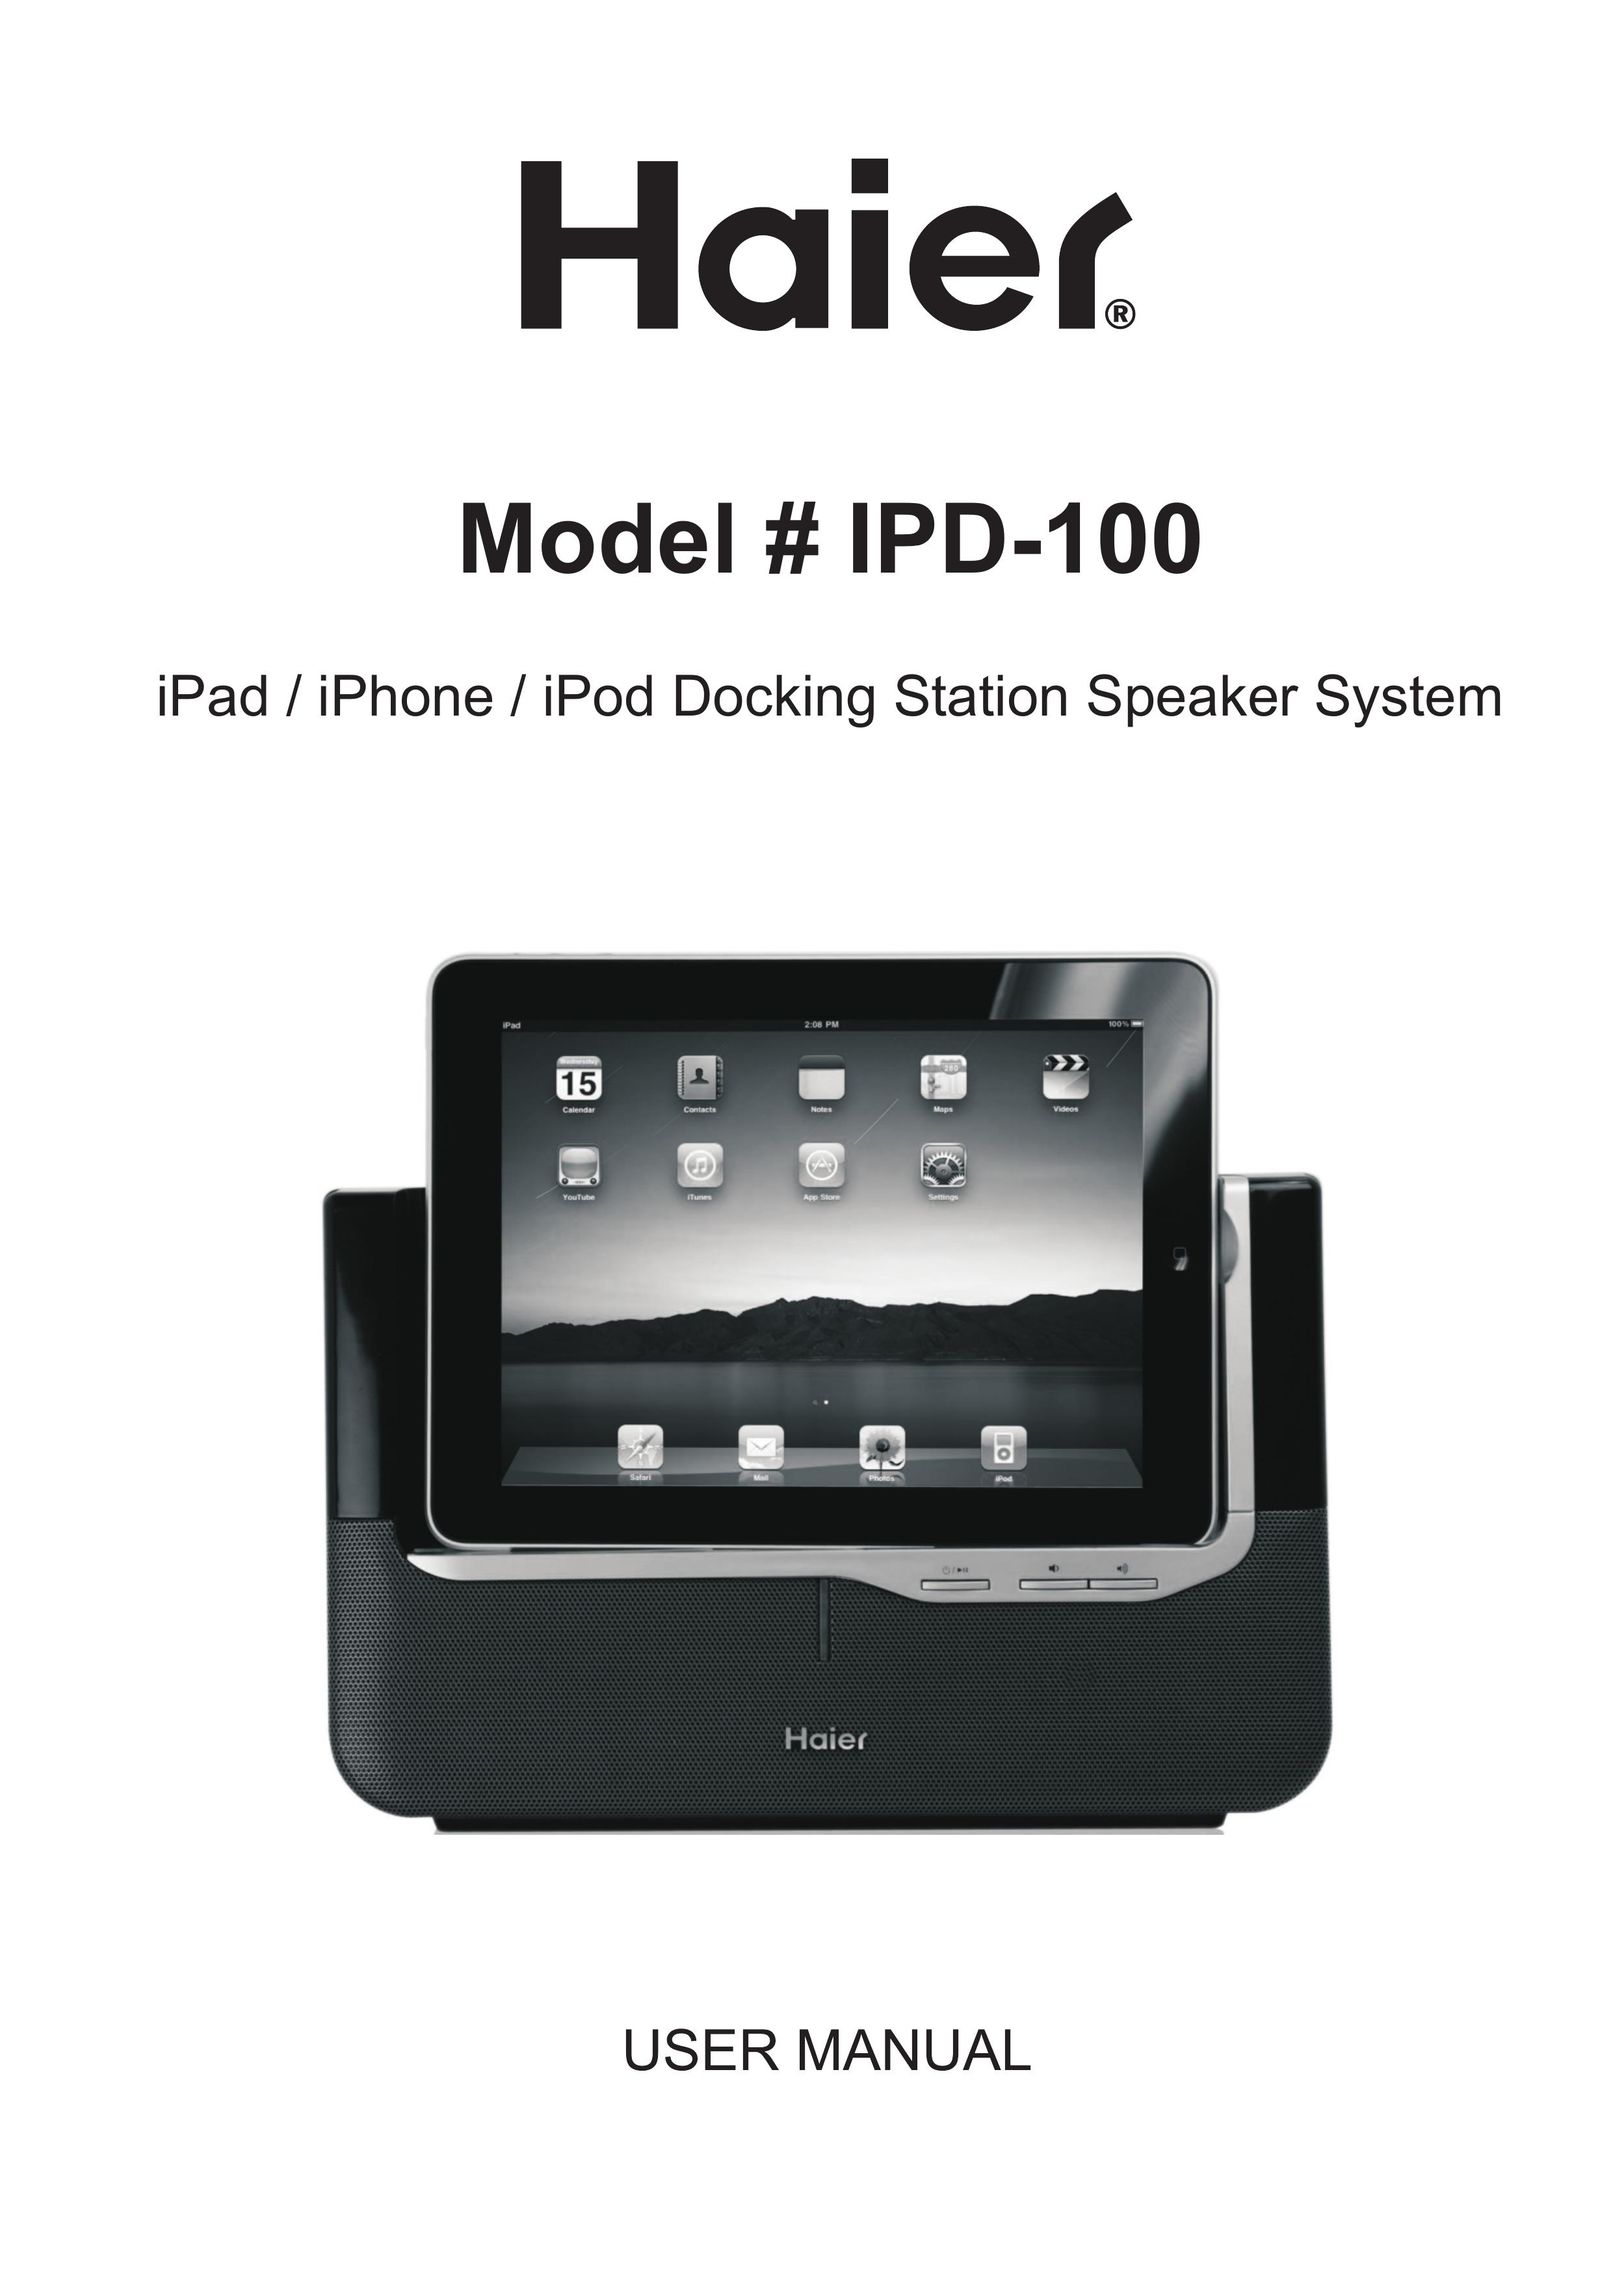 Haier IPD-100 Speaker User Manual